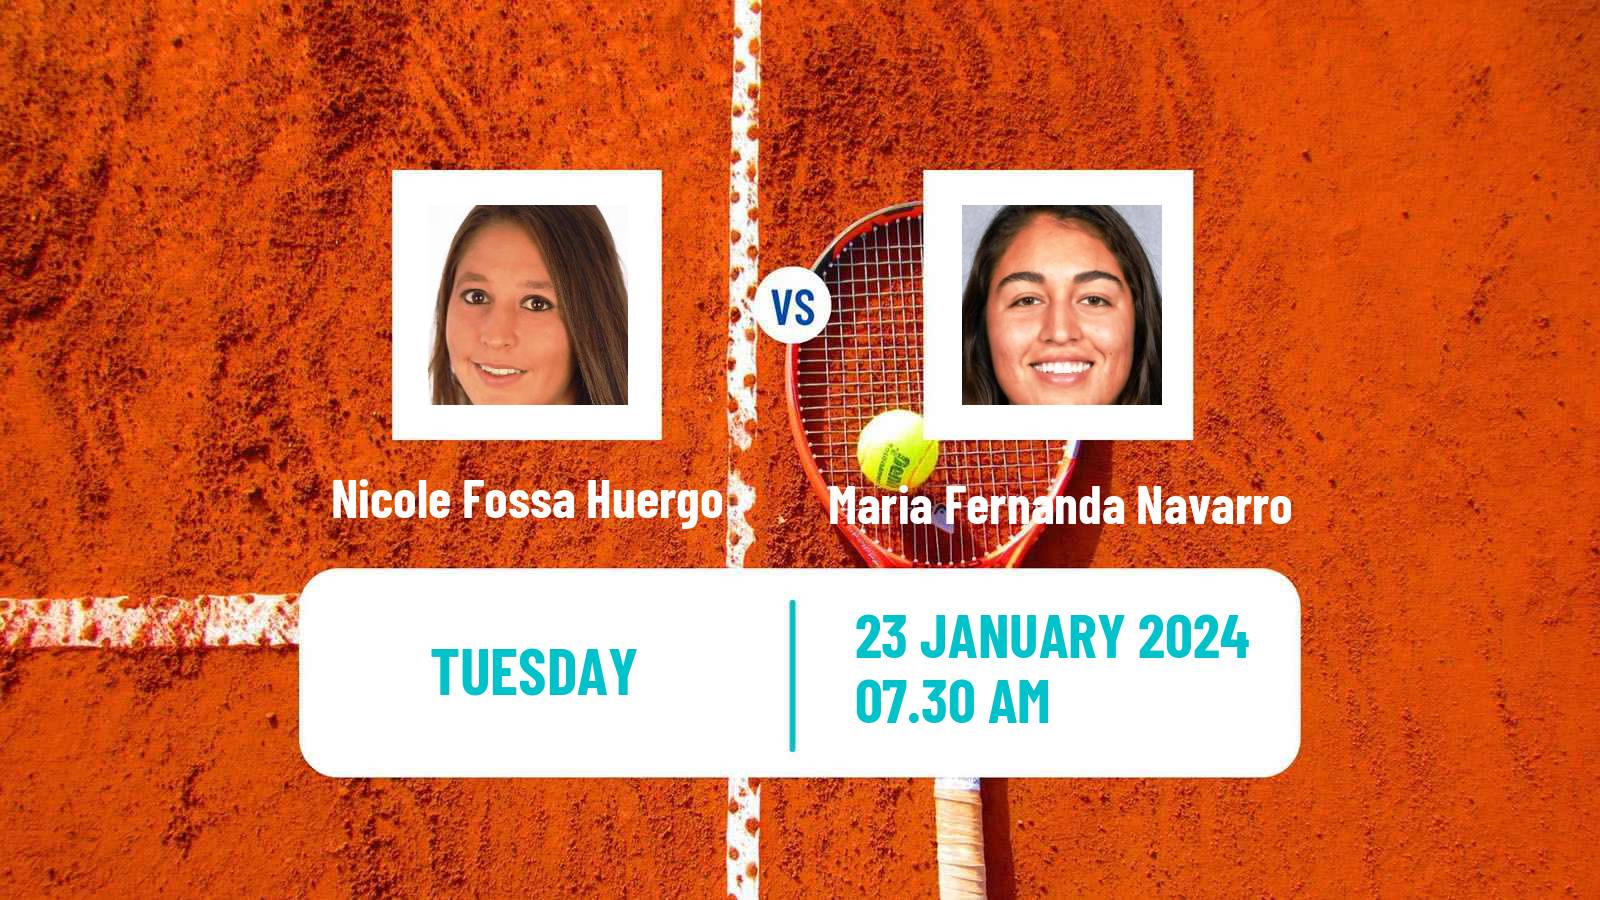 Tennis ITF W35 Buenos Aires 2 Women Nicole Fossa Huergo - Maria Fernanda Navarro